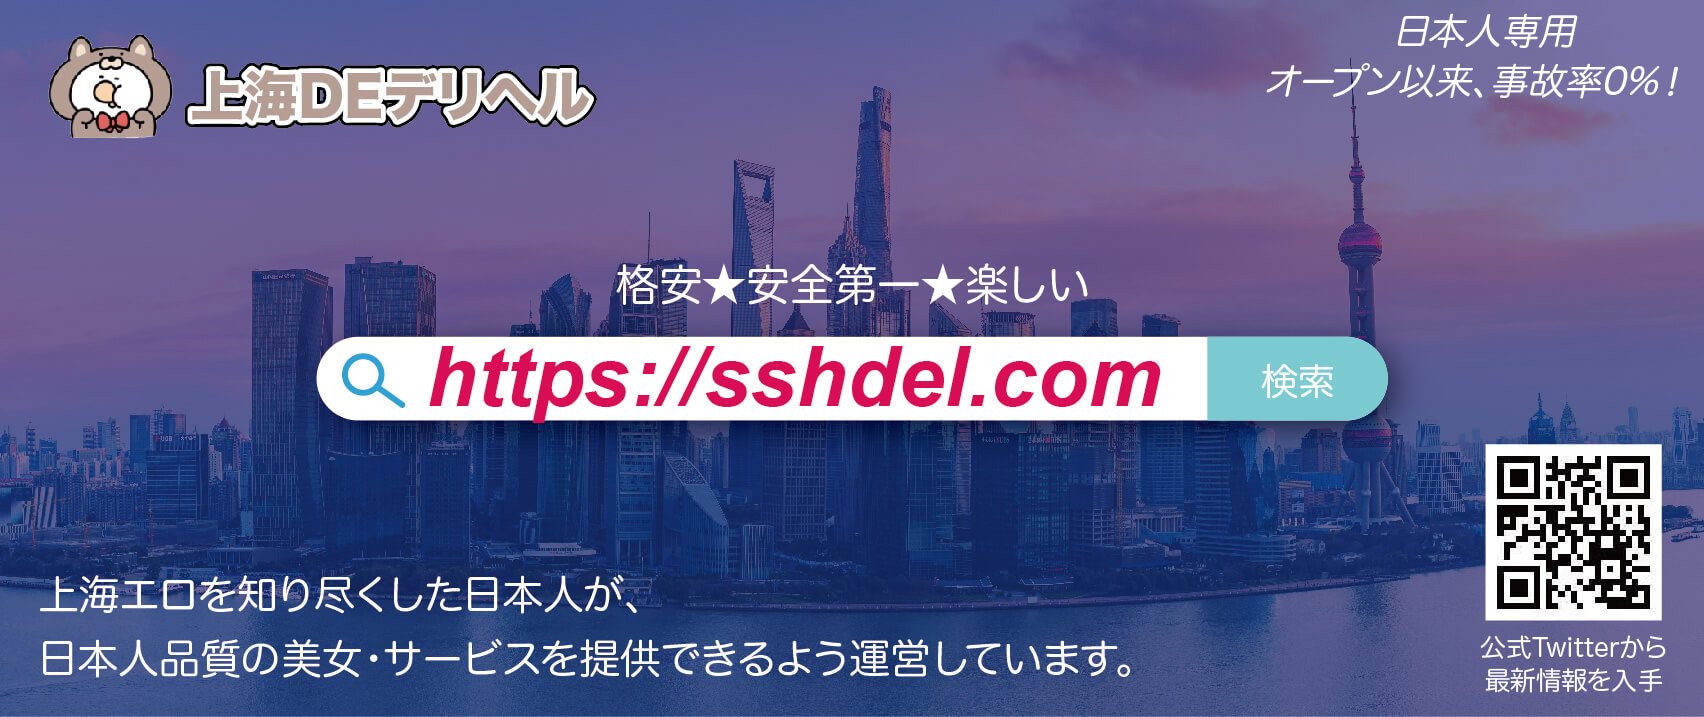 【無料開放】上海夜遊びの営業予測2019秋冬以降 参考画像